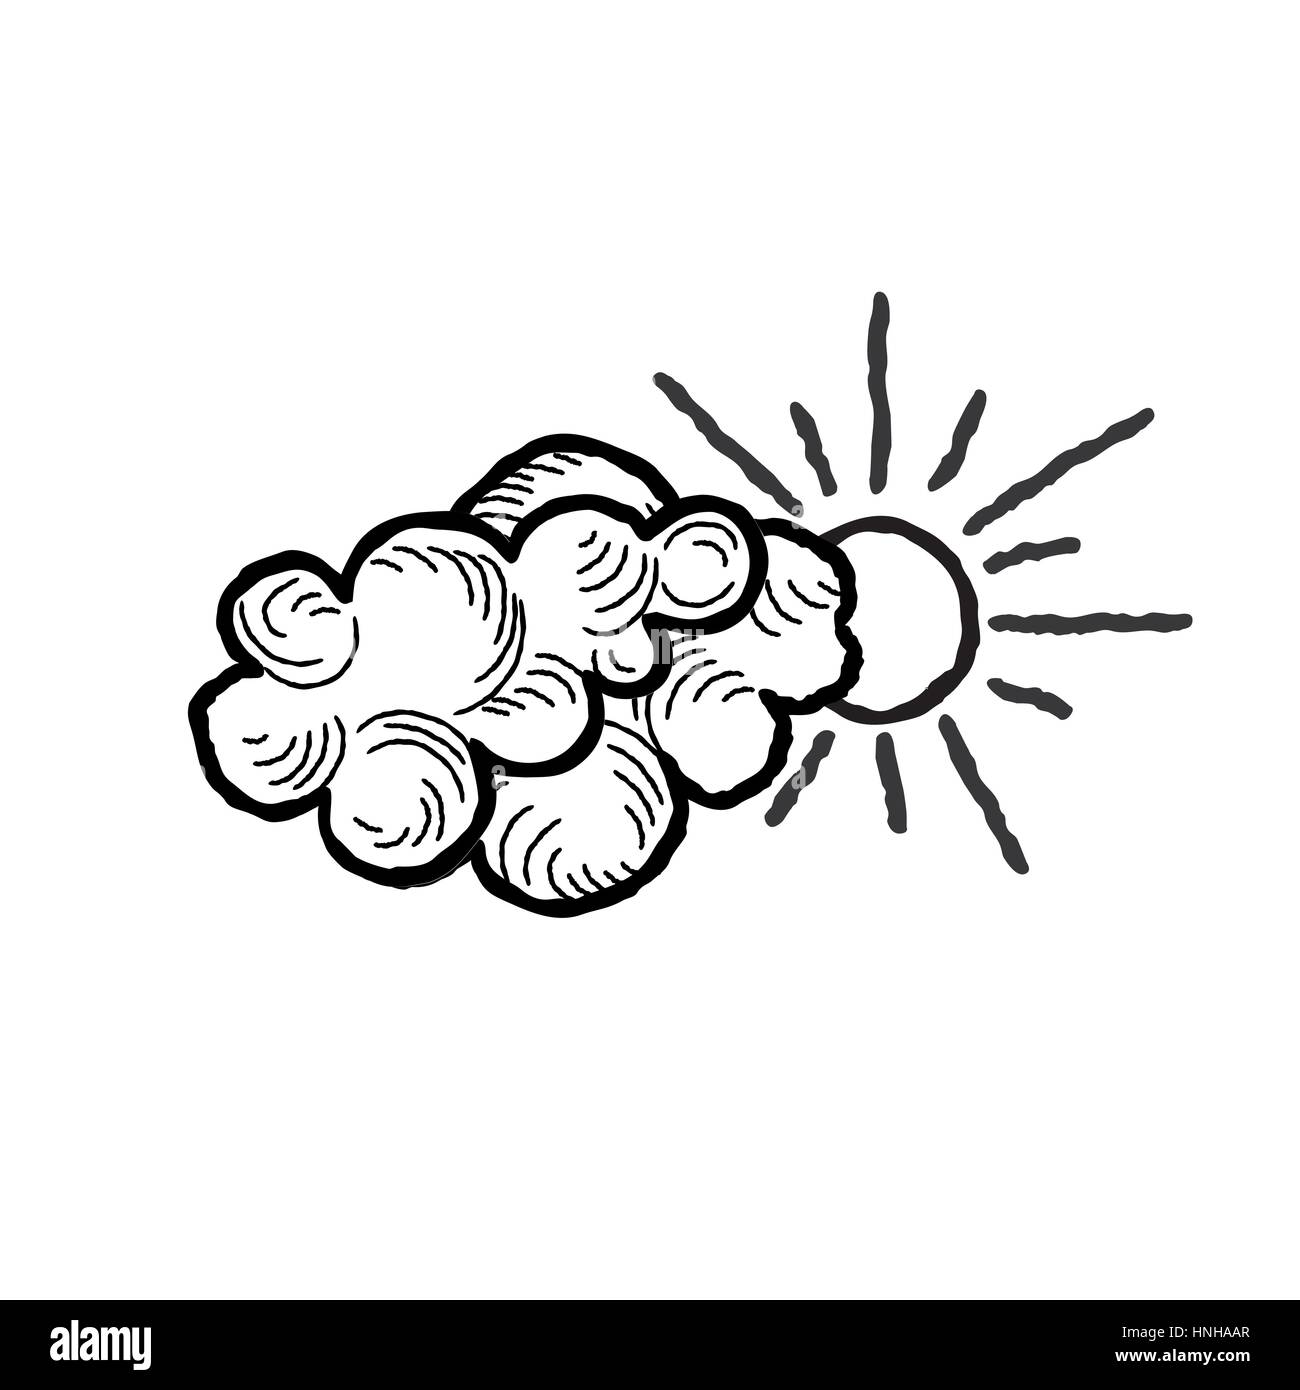 Sonne mit Wolken Symbol. doodle Line Art Wetter zeichen Abbildung Stock Vektor